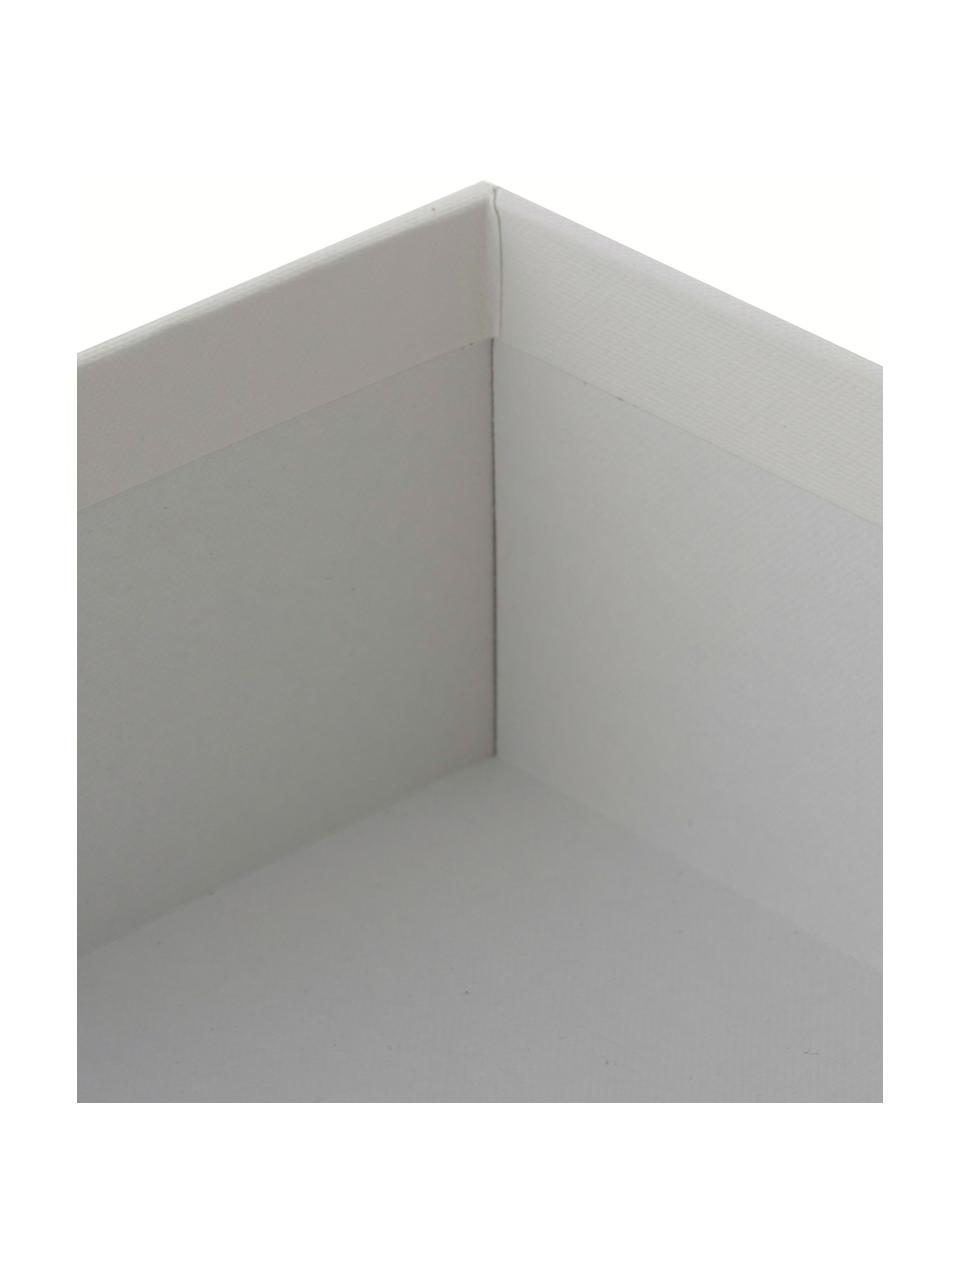 Modules de classement Trey, Carton laminé rigide, Blanc, larg. 23 x haut. 21 cm